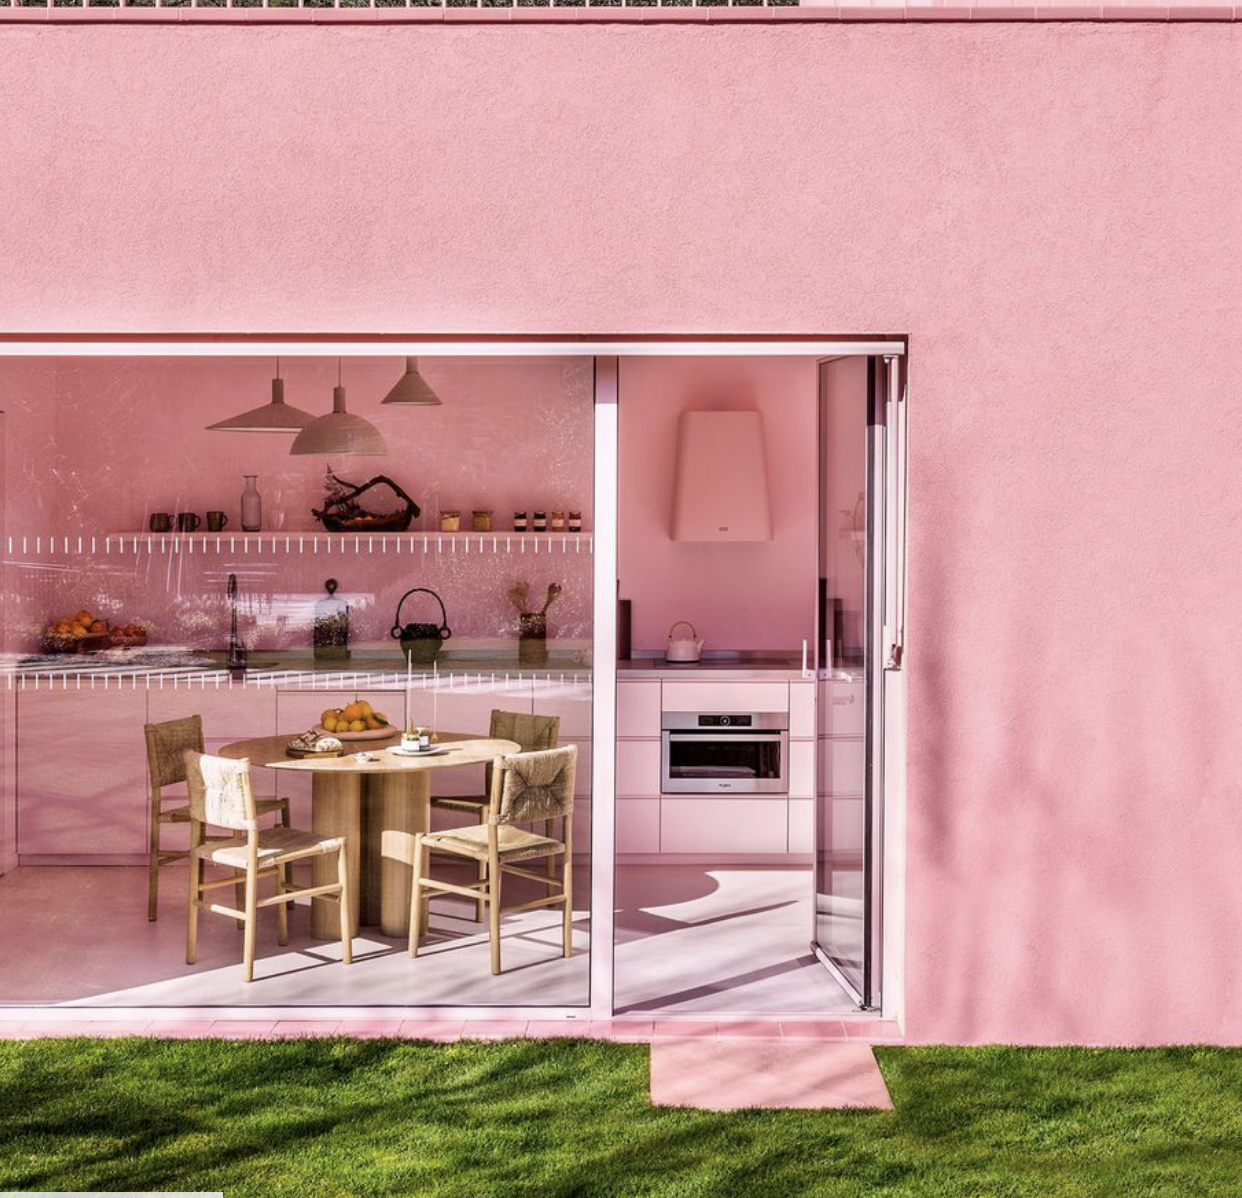 Σ’ αυτό το ροζ σπίτι στη Γαλλία, θα μπορούσε να μένει η Barbie